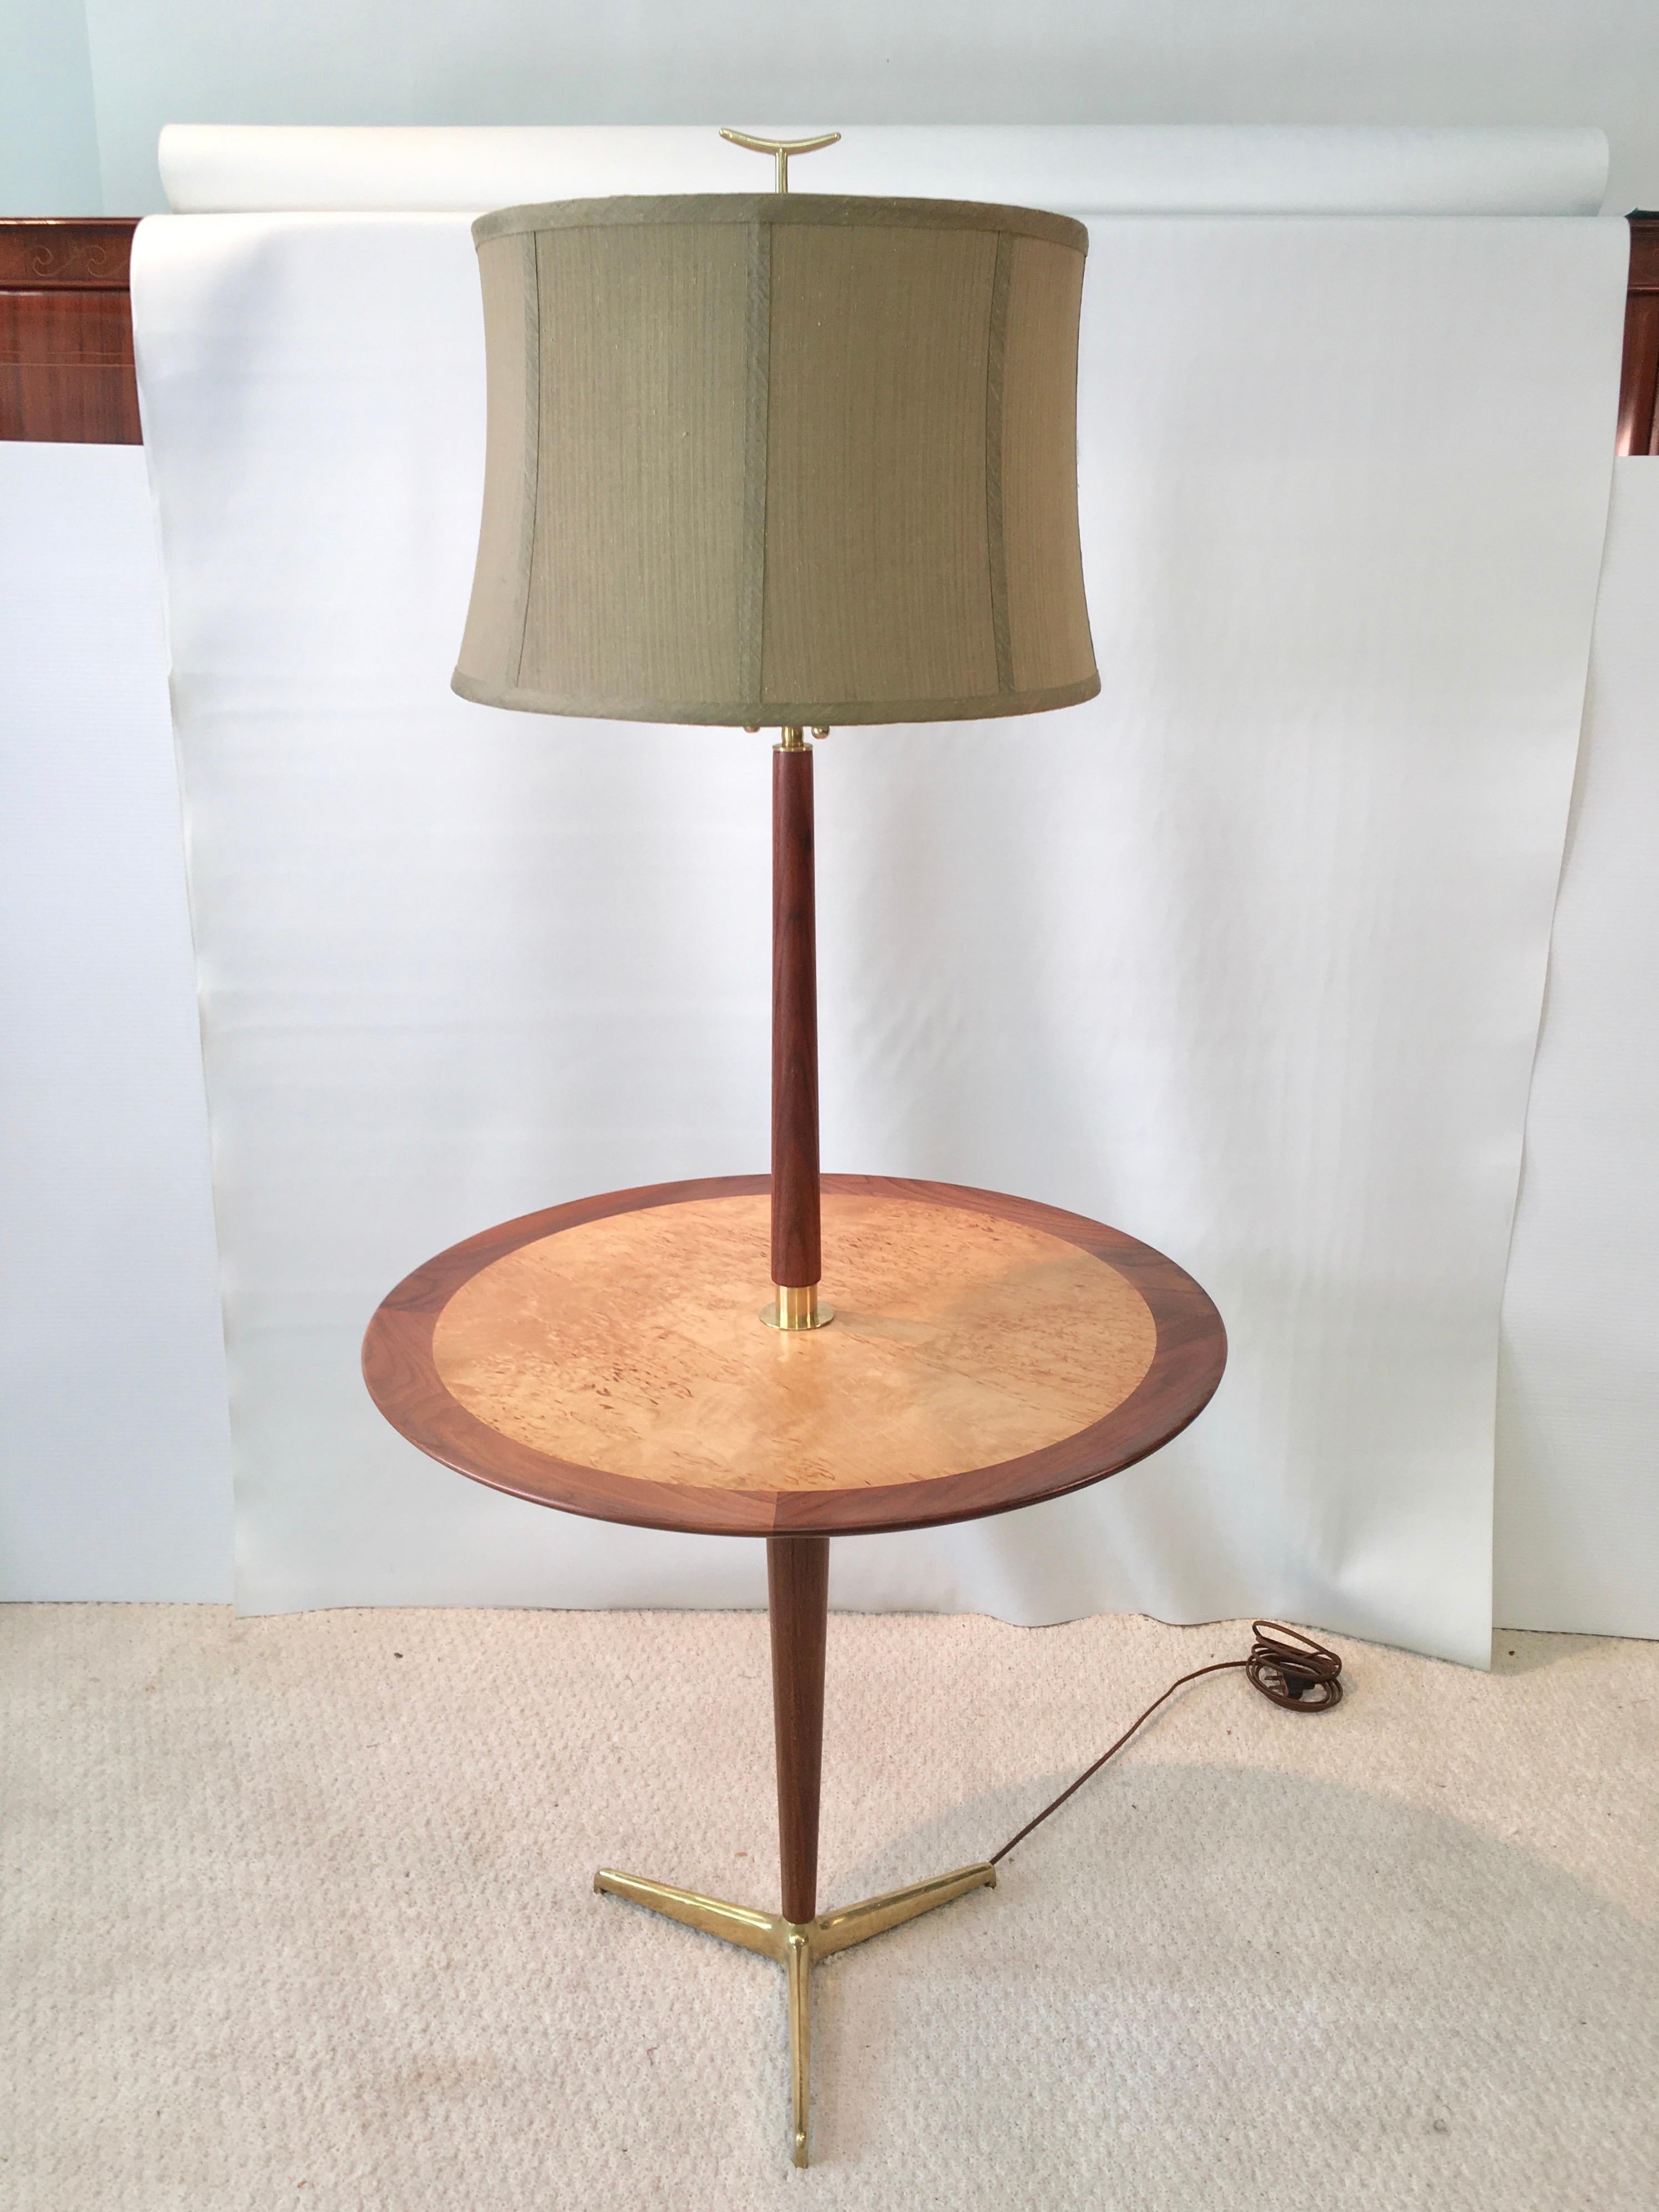 Rare ensemble lampadaire/table à manger Dunbar, modèle 4856, conçu par Edward Wormley vers 1948. Etiquette d'origine de Dunbar sur le dessous. Pieds effilés en noyer et tige de lampe. Plateau rond, 25